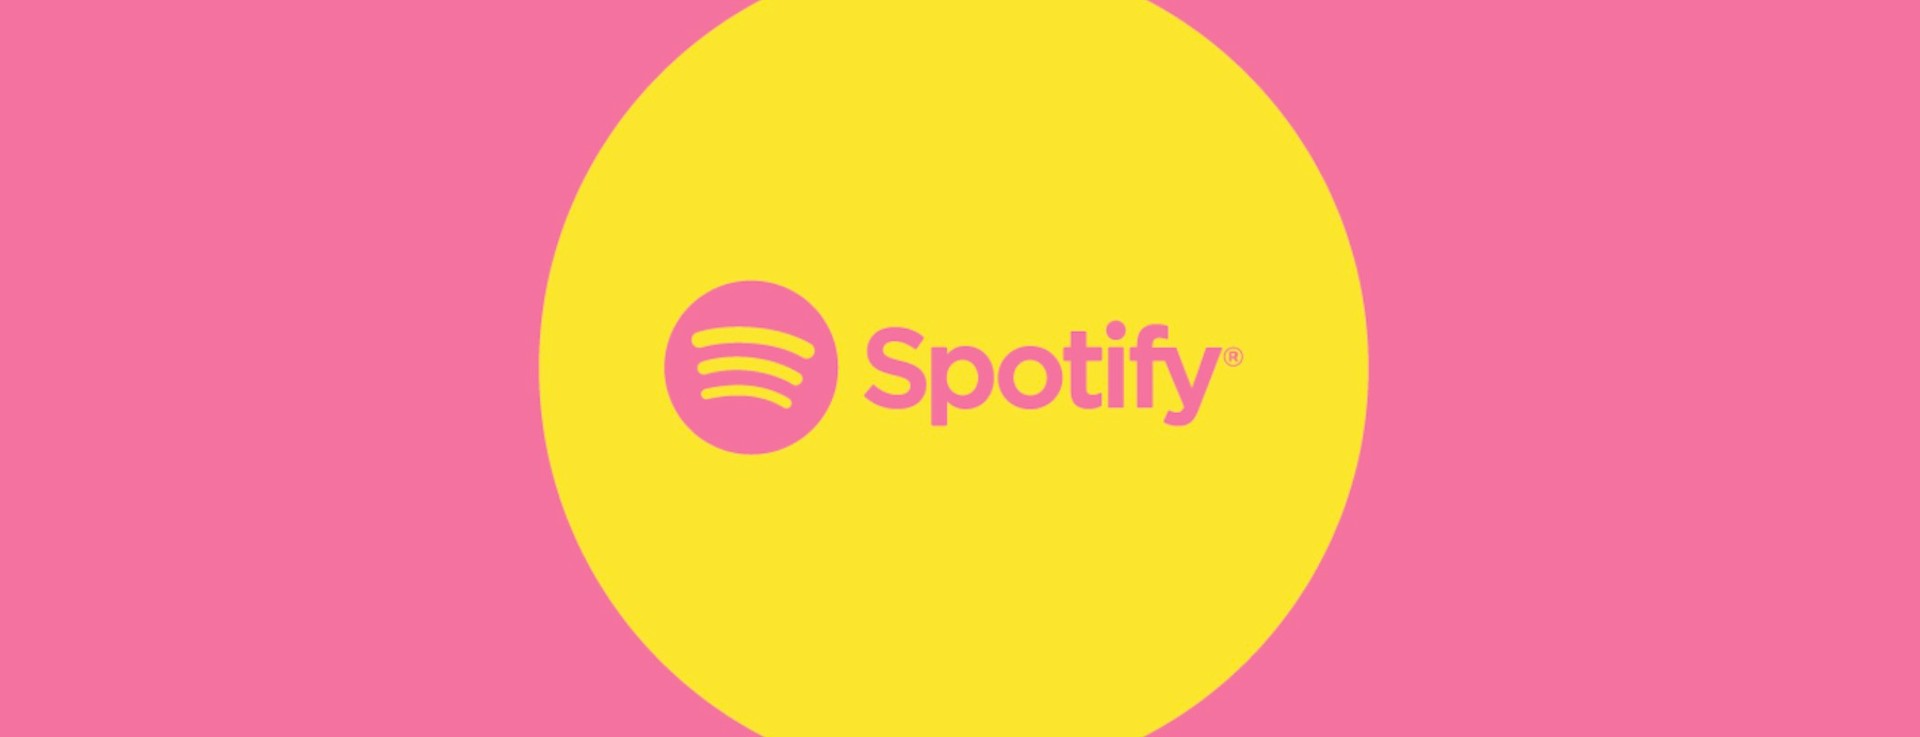 Spotify ora ha 220 milioni di abbonati premium a livello globale 